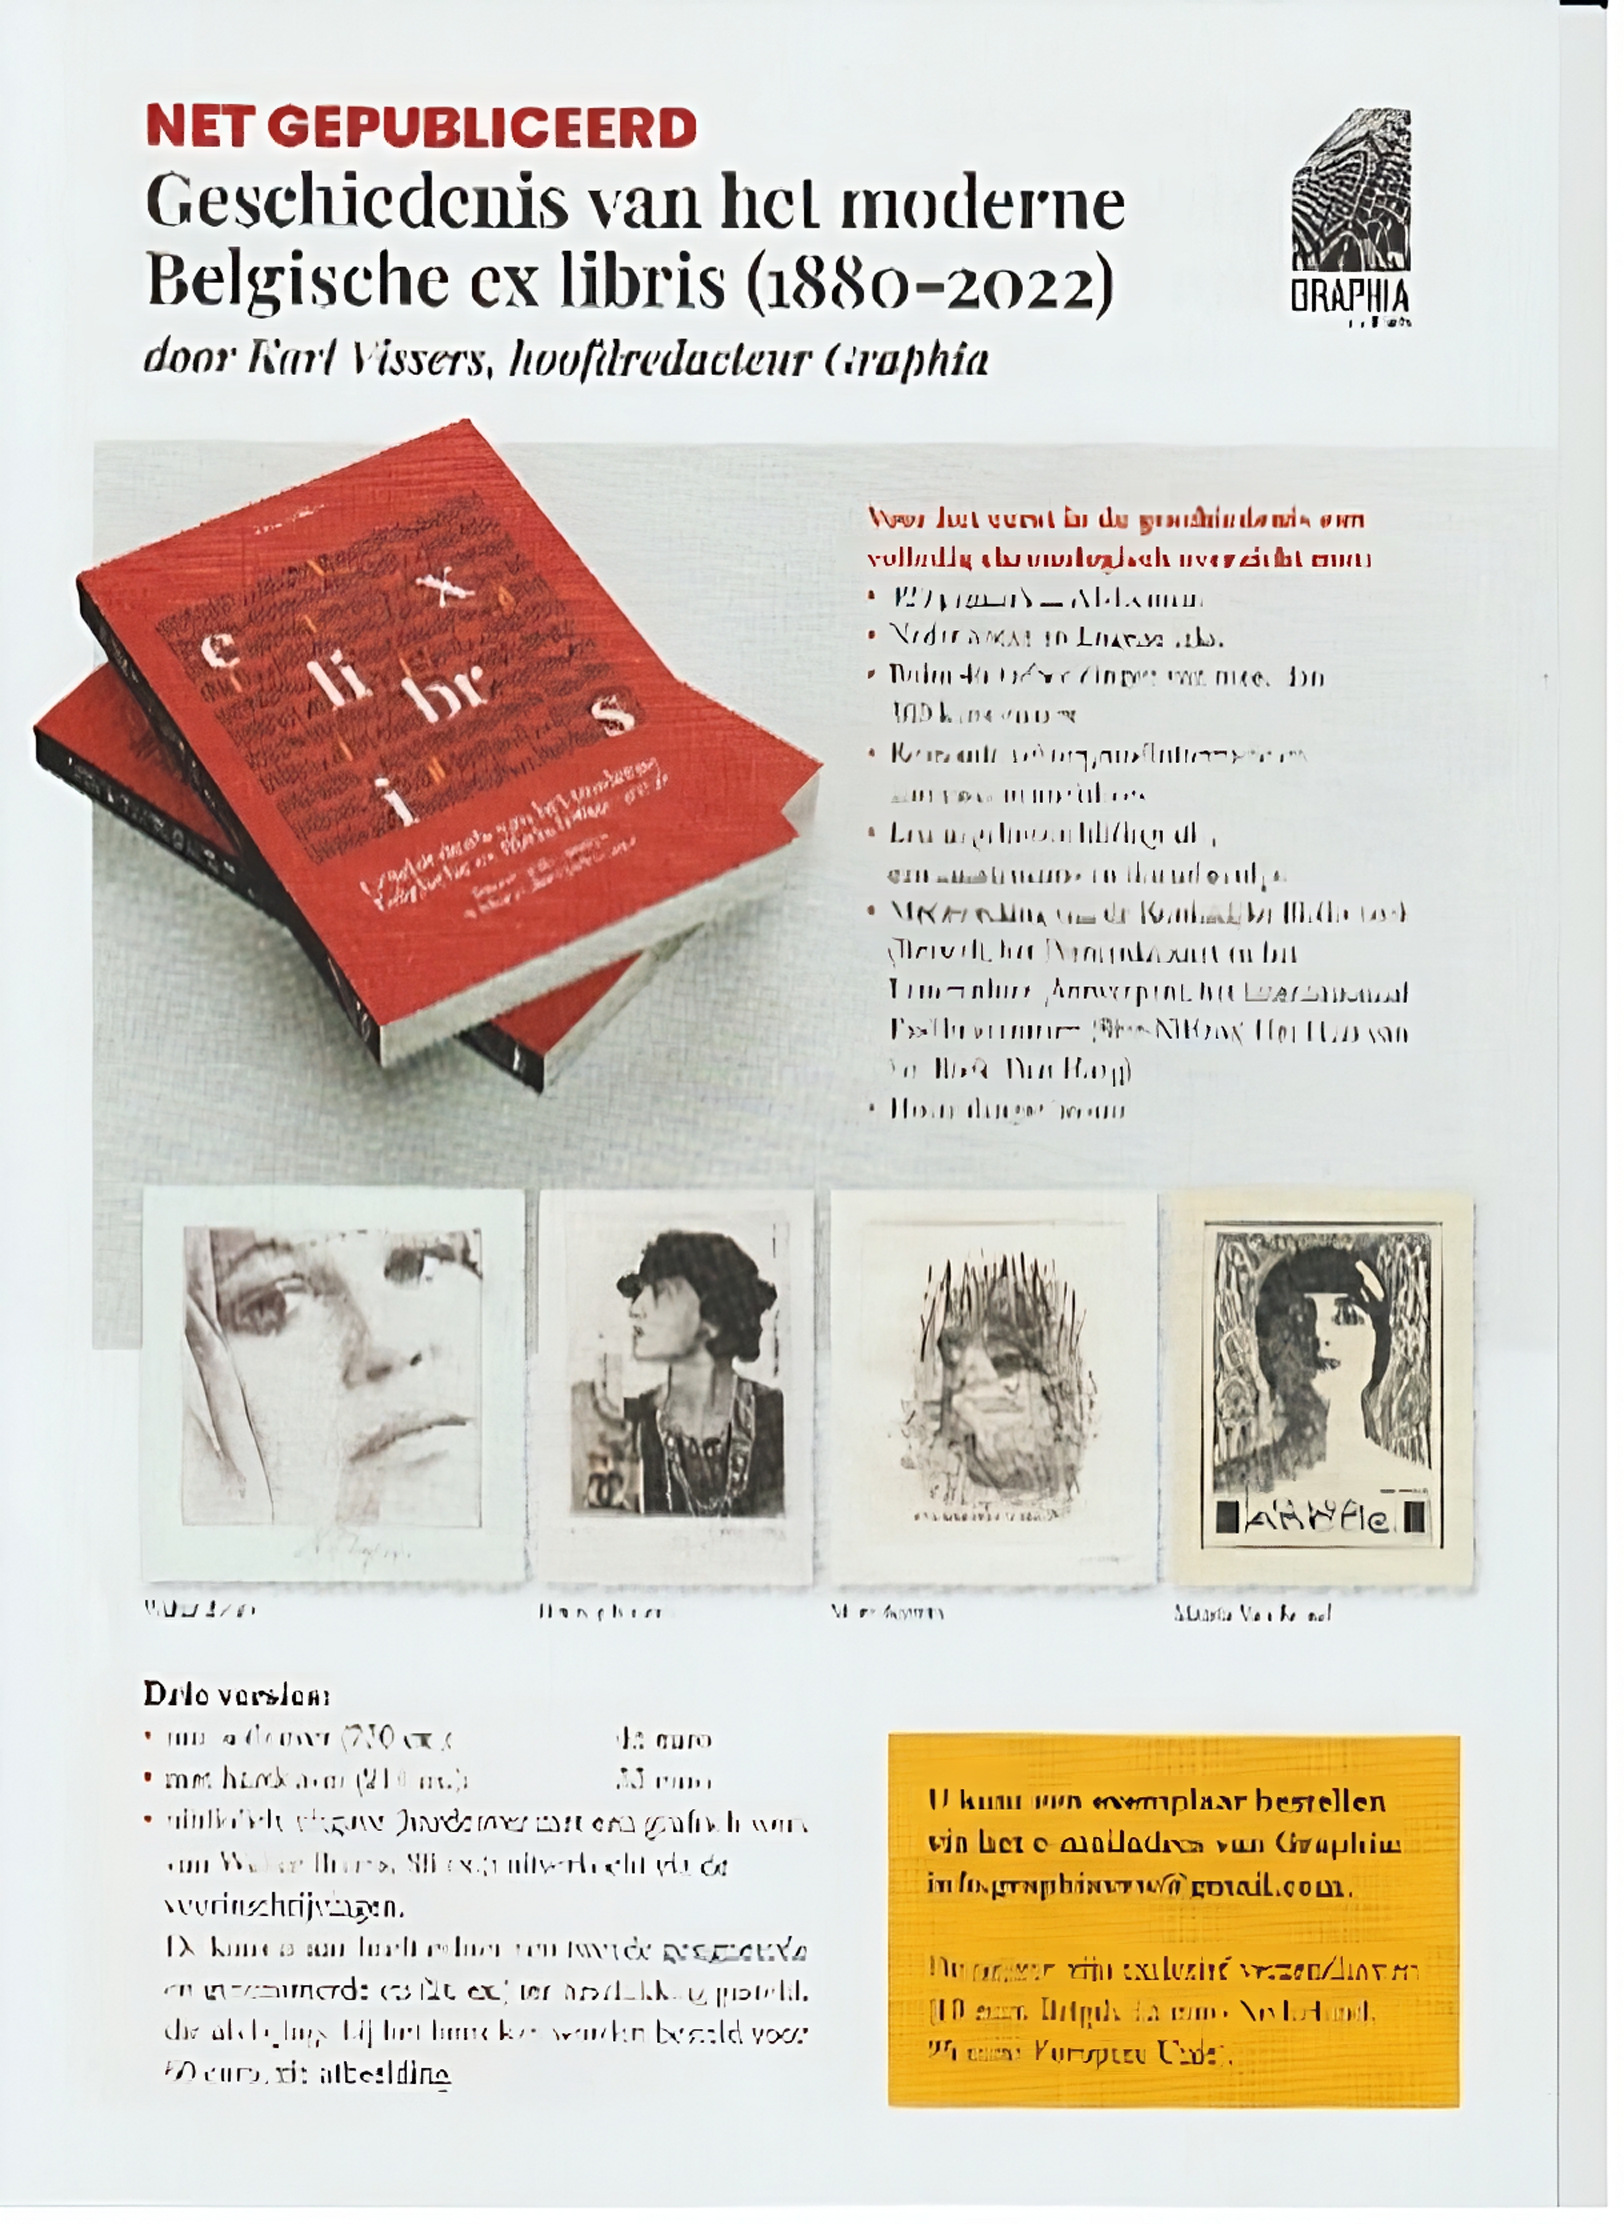 promotiefolder Geschiedenis van het moderne Belgische ex libris